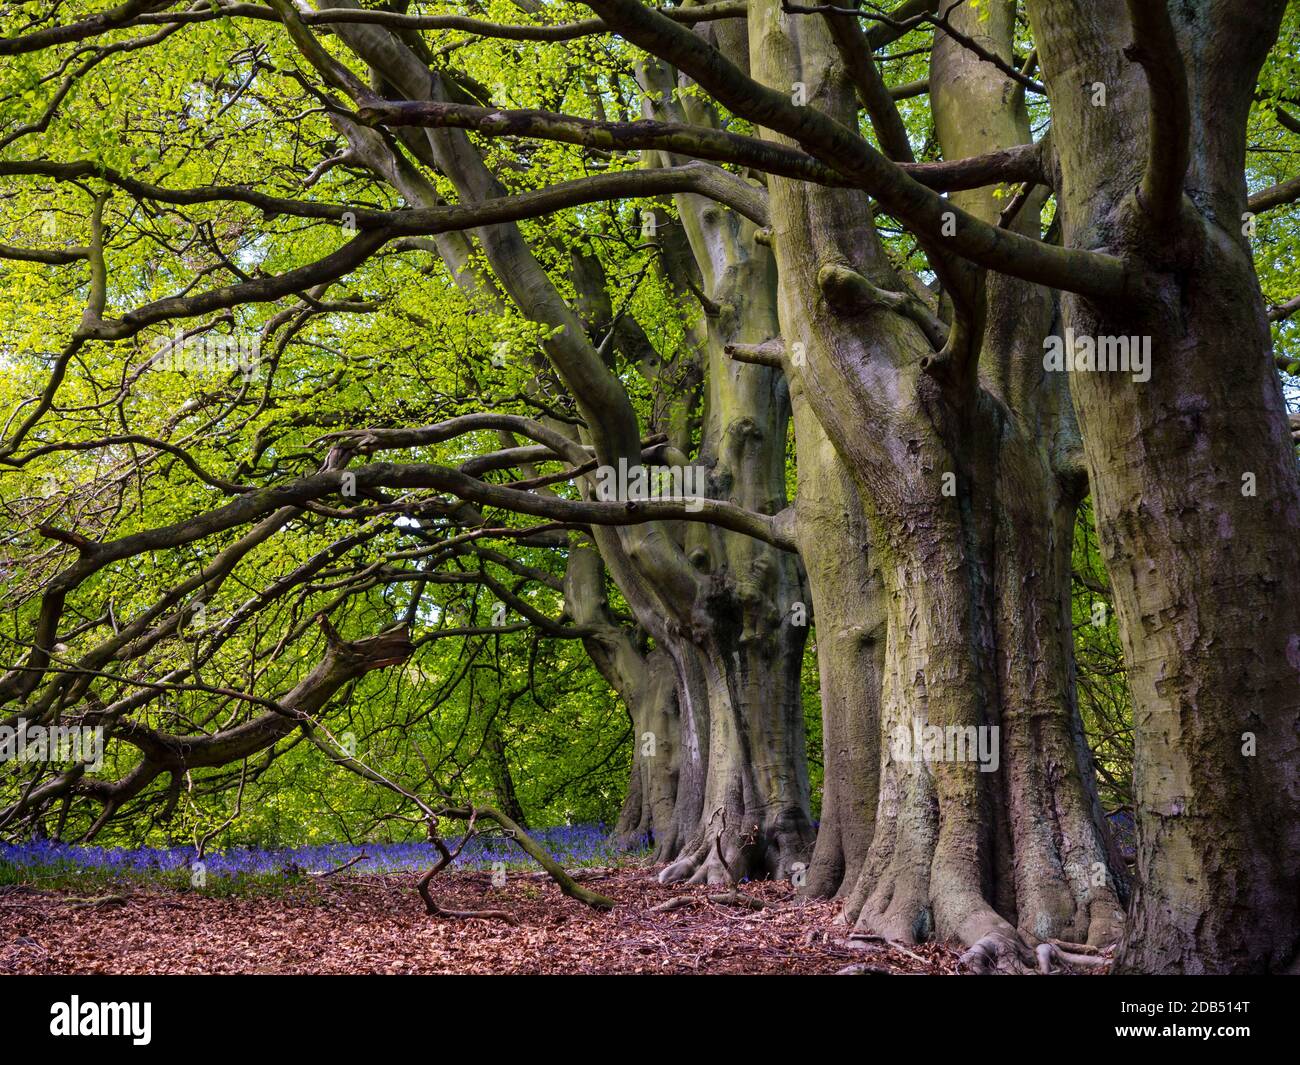 Fagus sylvatica, le hêtre européen ou le hêtre commun, un arbre à feuilles caduques appartenant à la famille des hêtres Fagaceae qui pousse à Bow Wood Derbyshire Royaume-Uni Banque D'Images